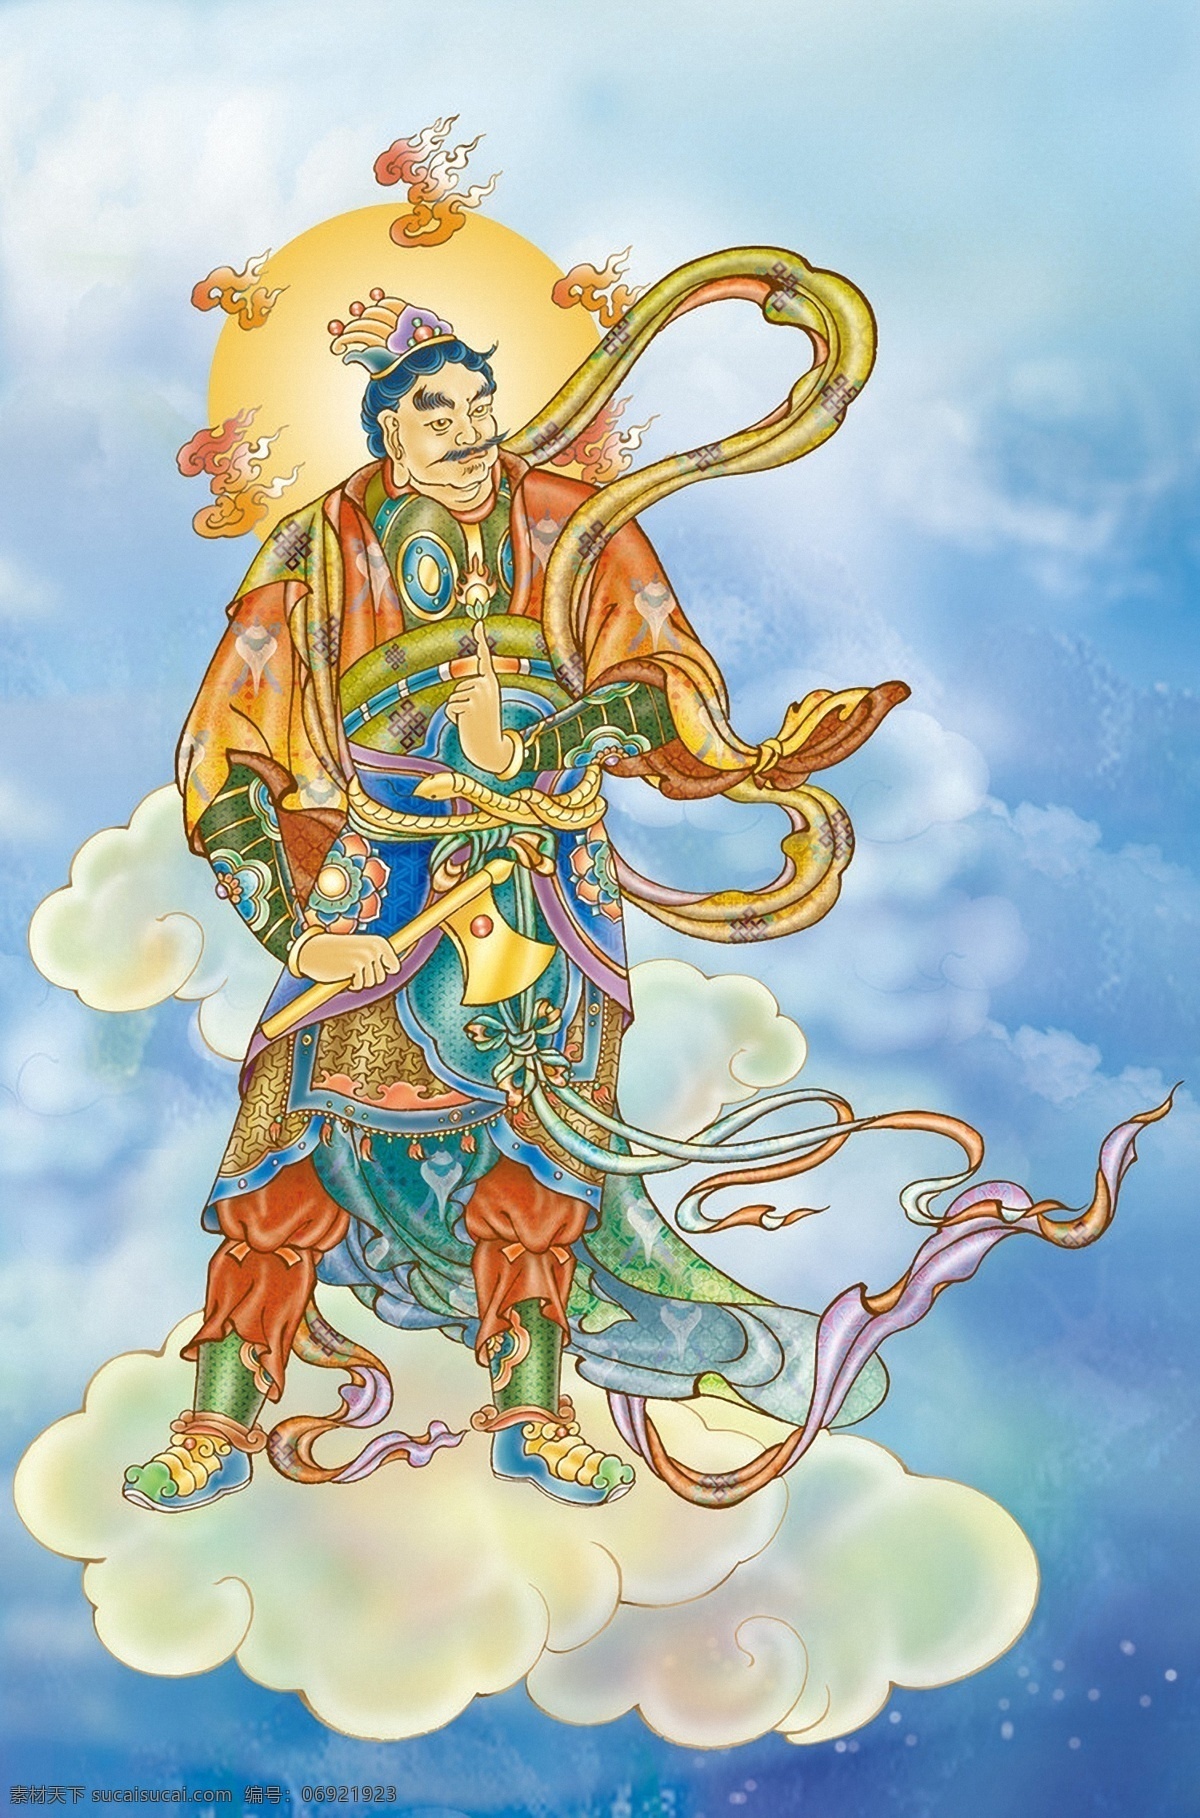 安底罗大将 安 底 罗 大将 十 二 药叉 佛像 释迦摩尼 佛祖 平安 云朵 云端 光芒 佛教 宗教信仰 佛像佛文化 文化艺术